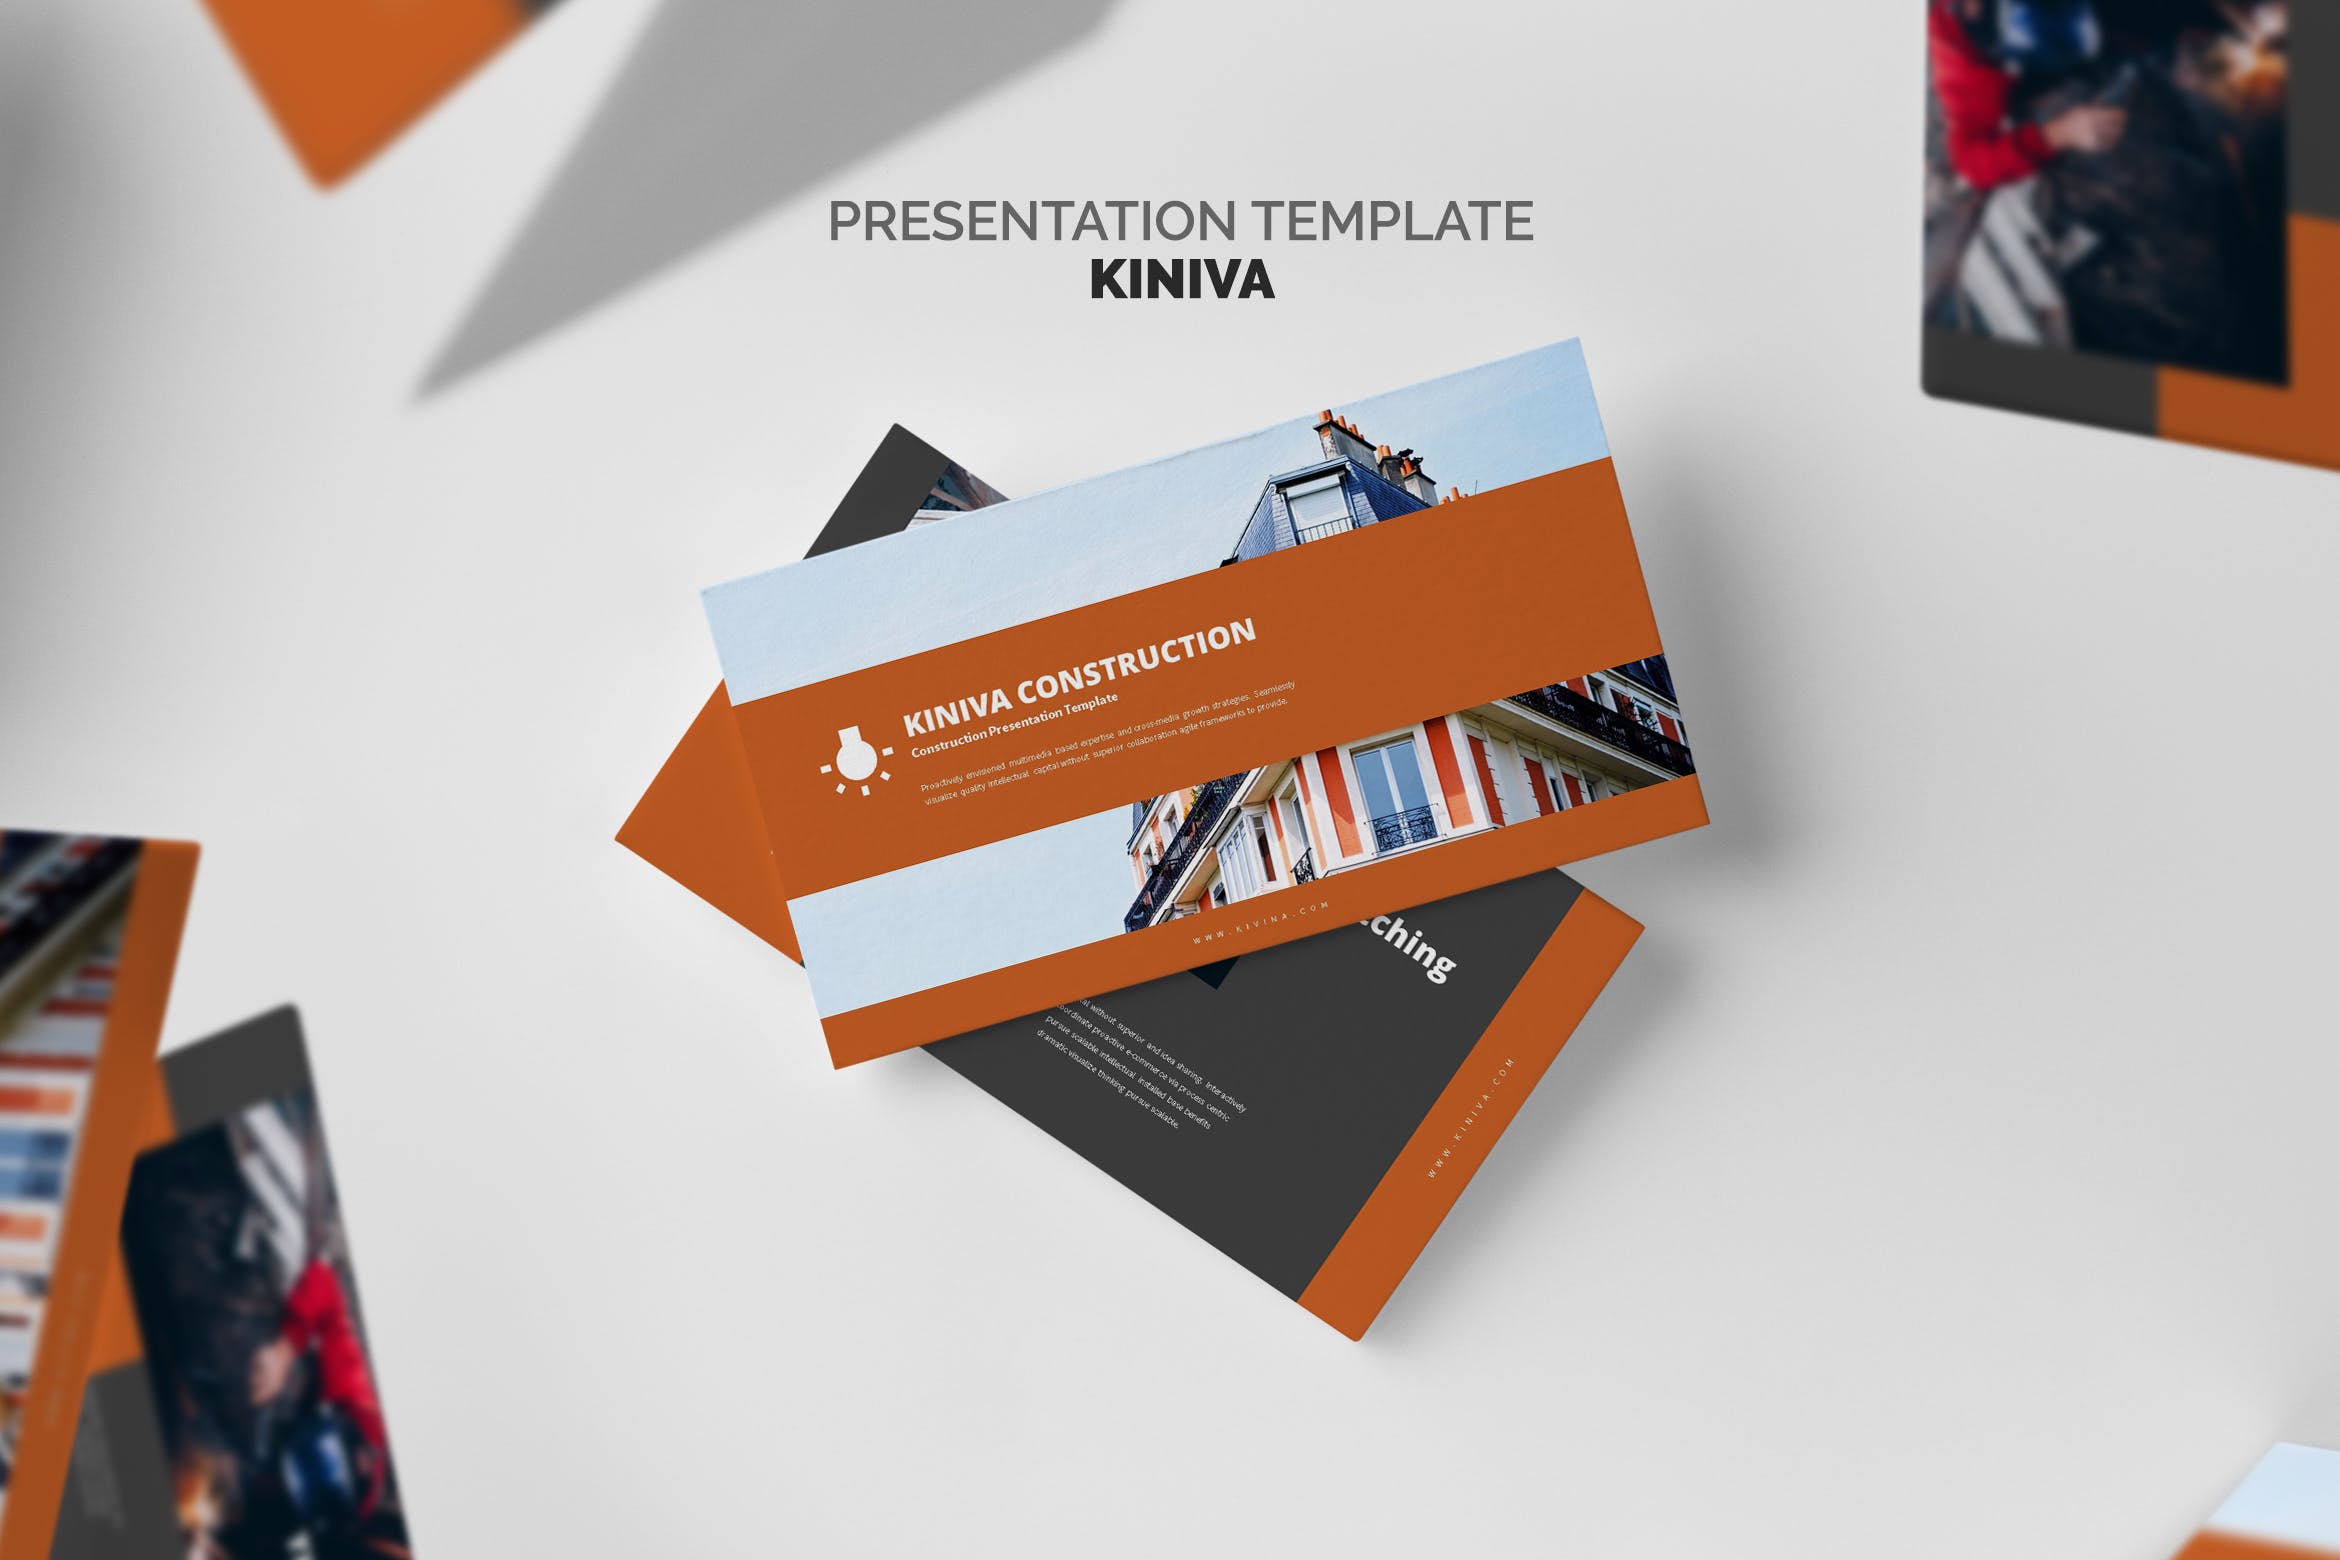 建筑与工程企业&项目介绍第一素材精选PPT模板 Kiniva : Construction & Engineering Powerpoint插图